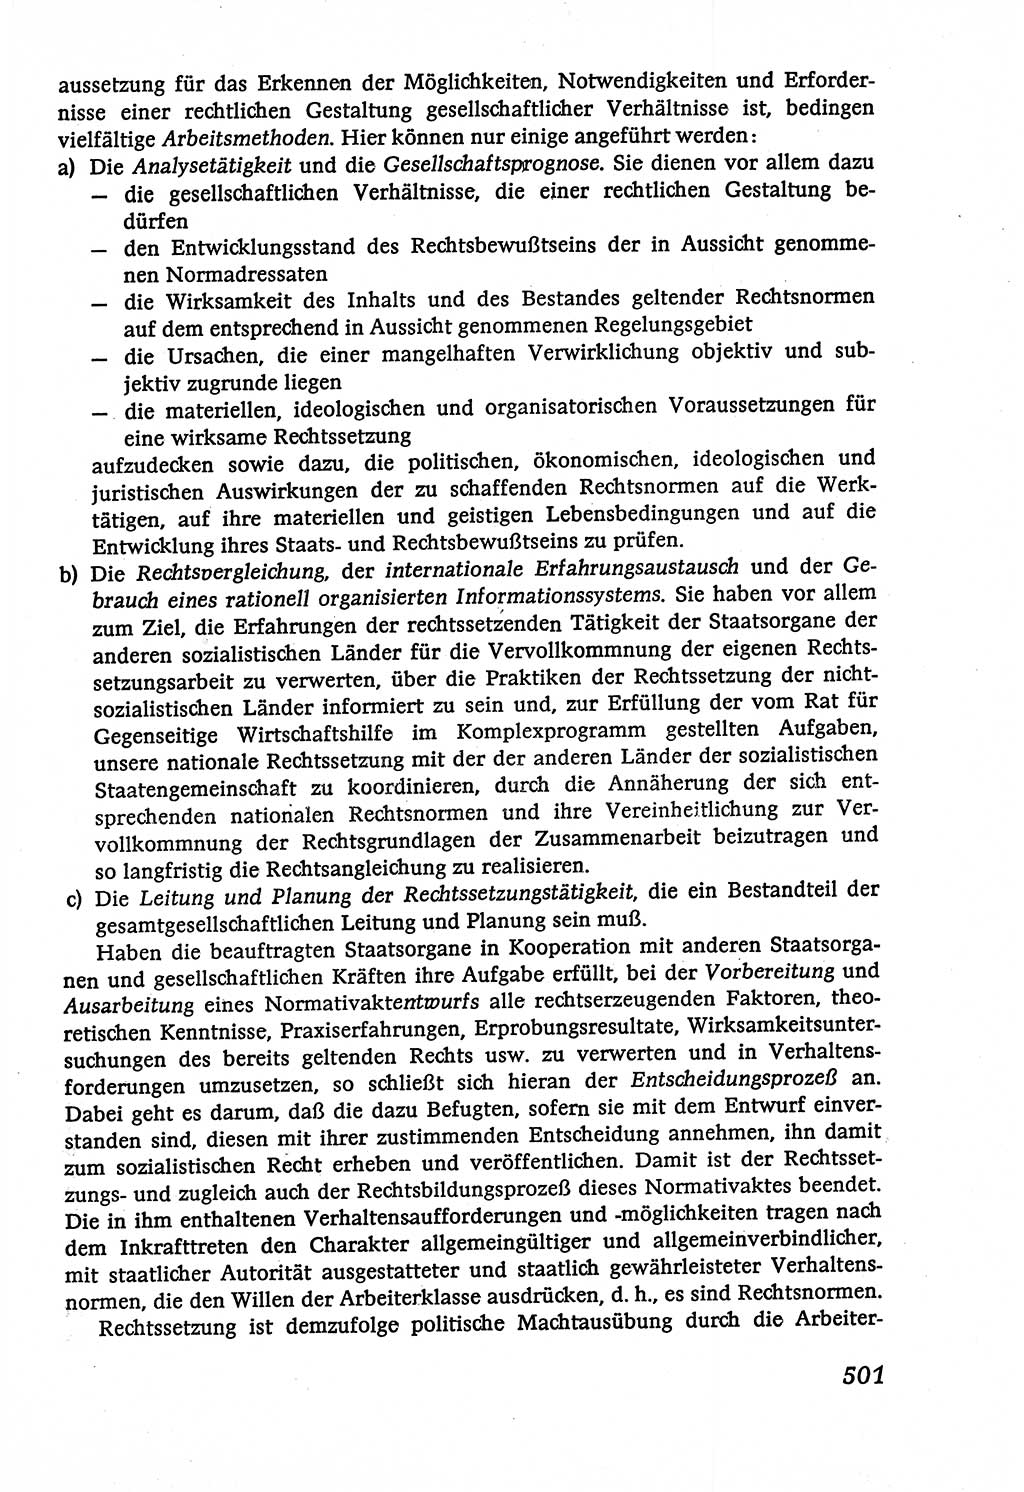 Marxistisch-leninistische (ML) Staats- und Rechtstheorie [Deutsche Demokratische Republik (DDR)], Lehrbuch 1980, Seite 501 (ML St.-R.-Th. DDR Lb. 1980, S. 501)